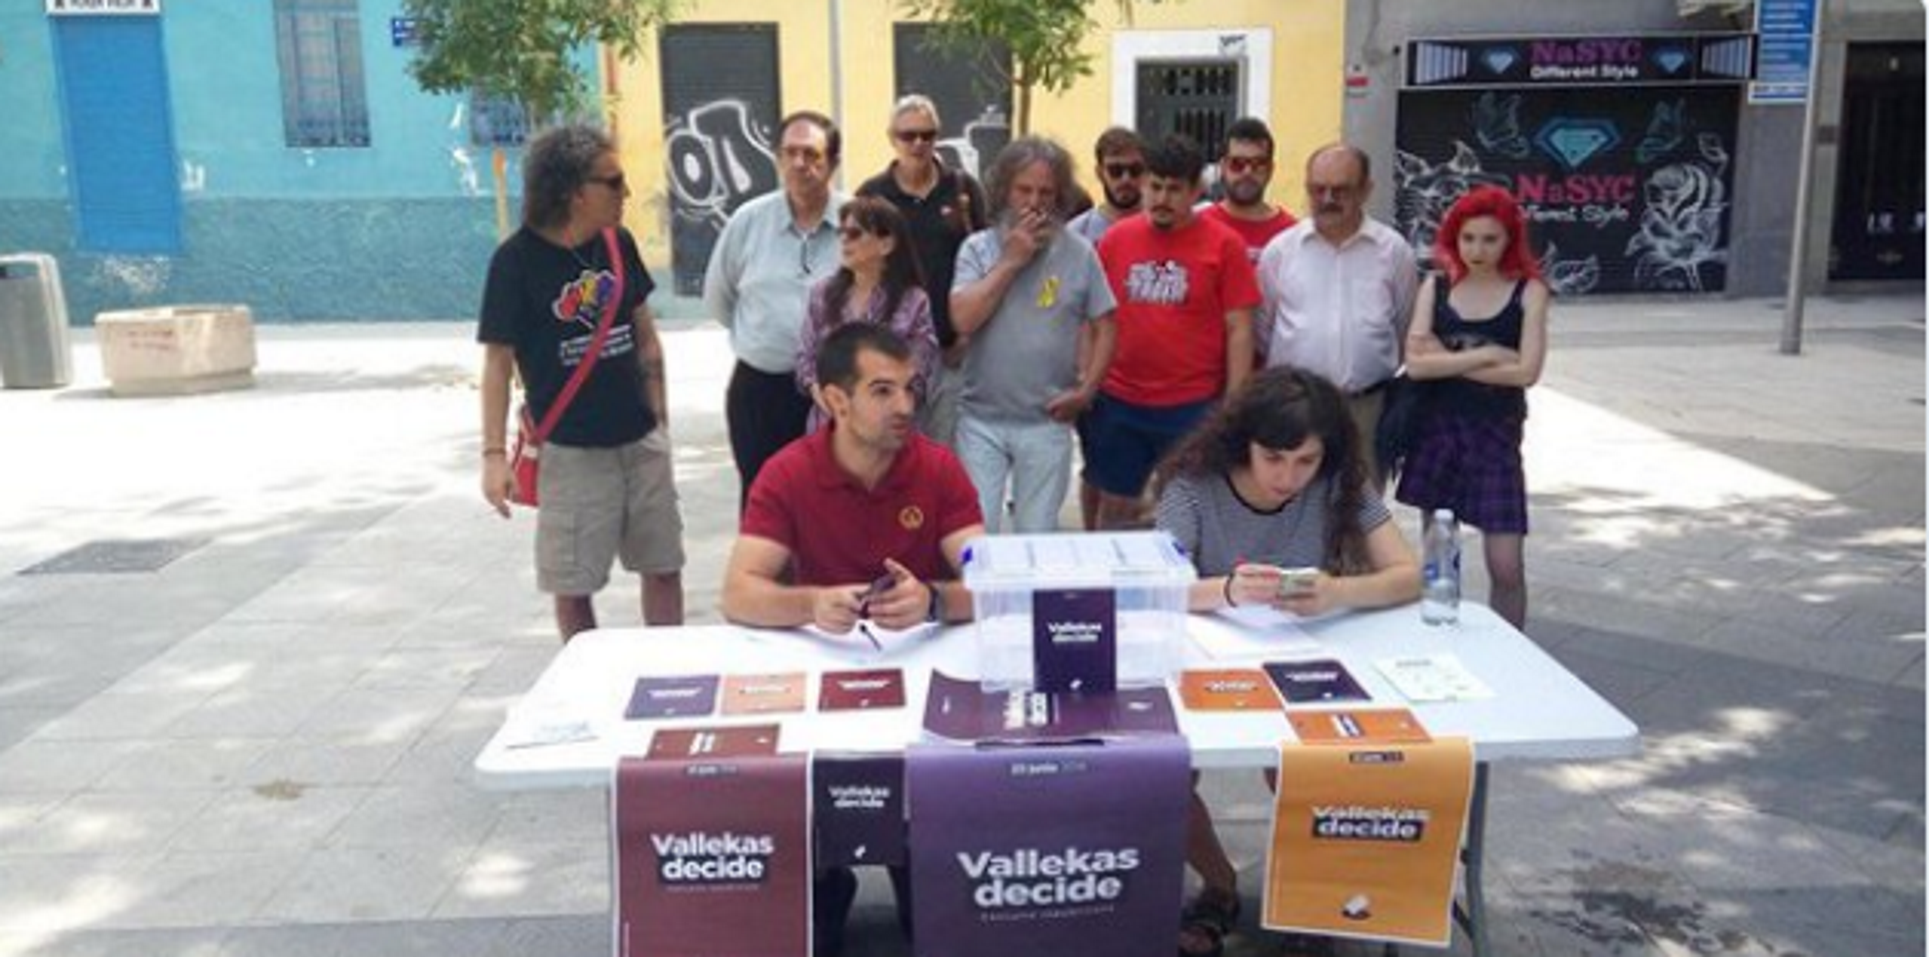 Vallecas organiza una consulta sobre la monarquía española, al estilo catalán